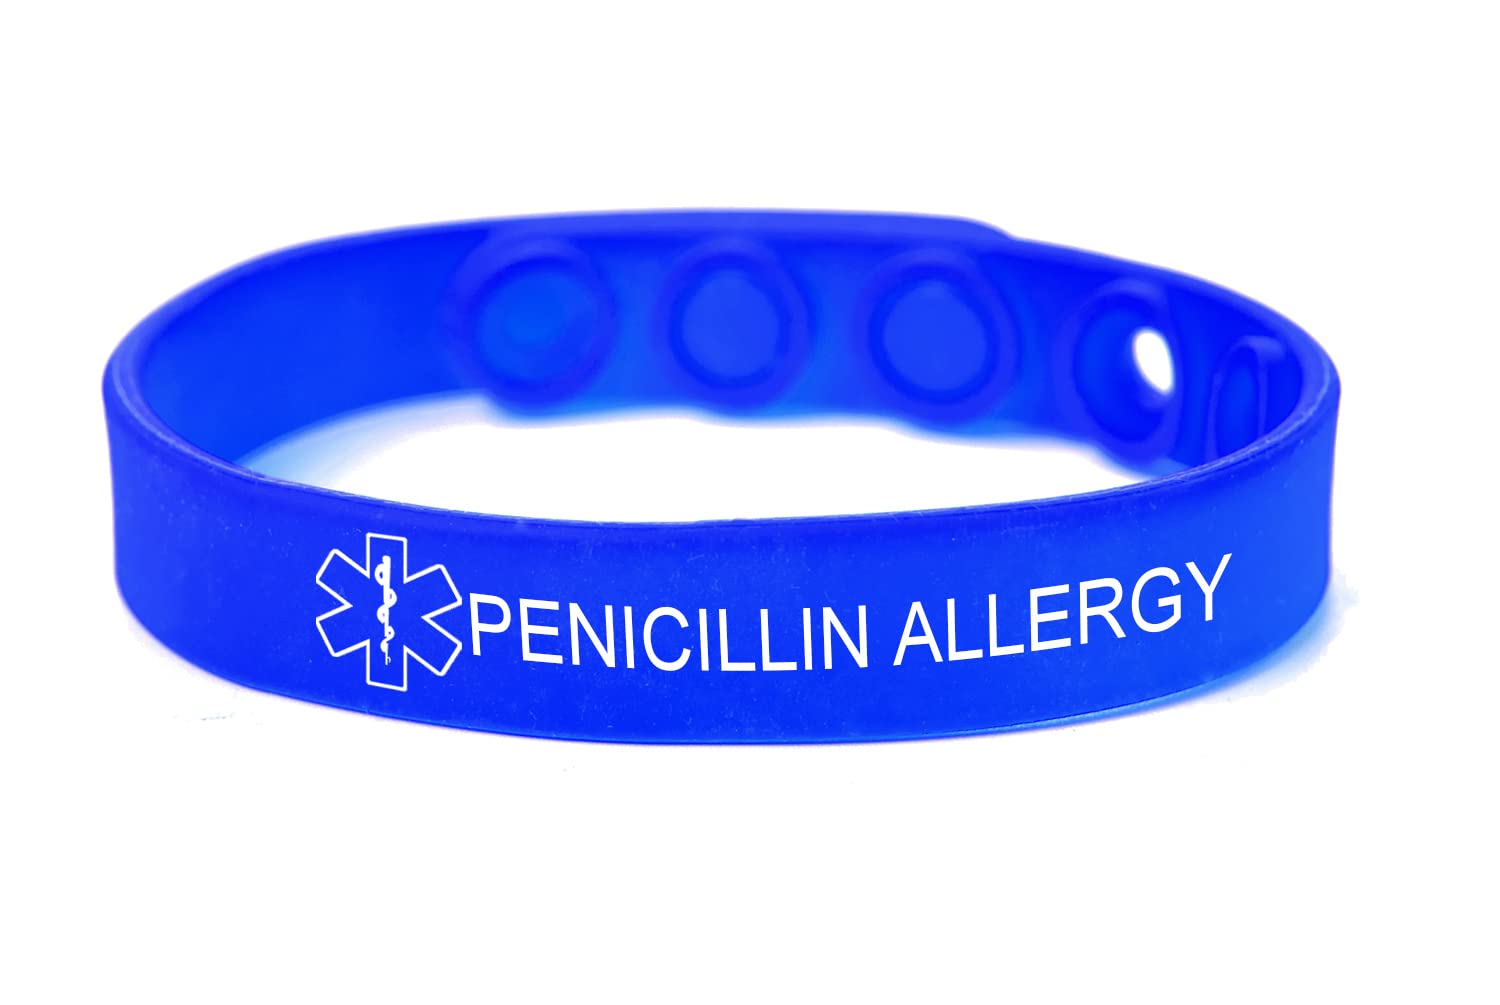 AllergyMediband Allergy Alert Write On Medical Bracelet